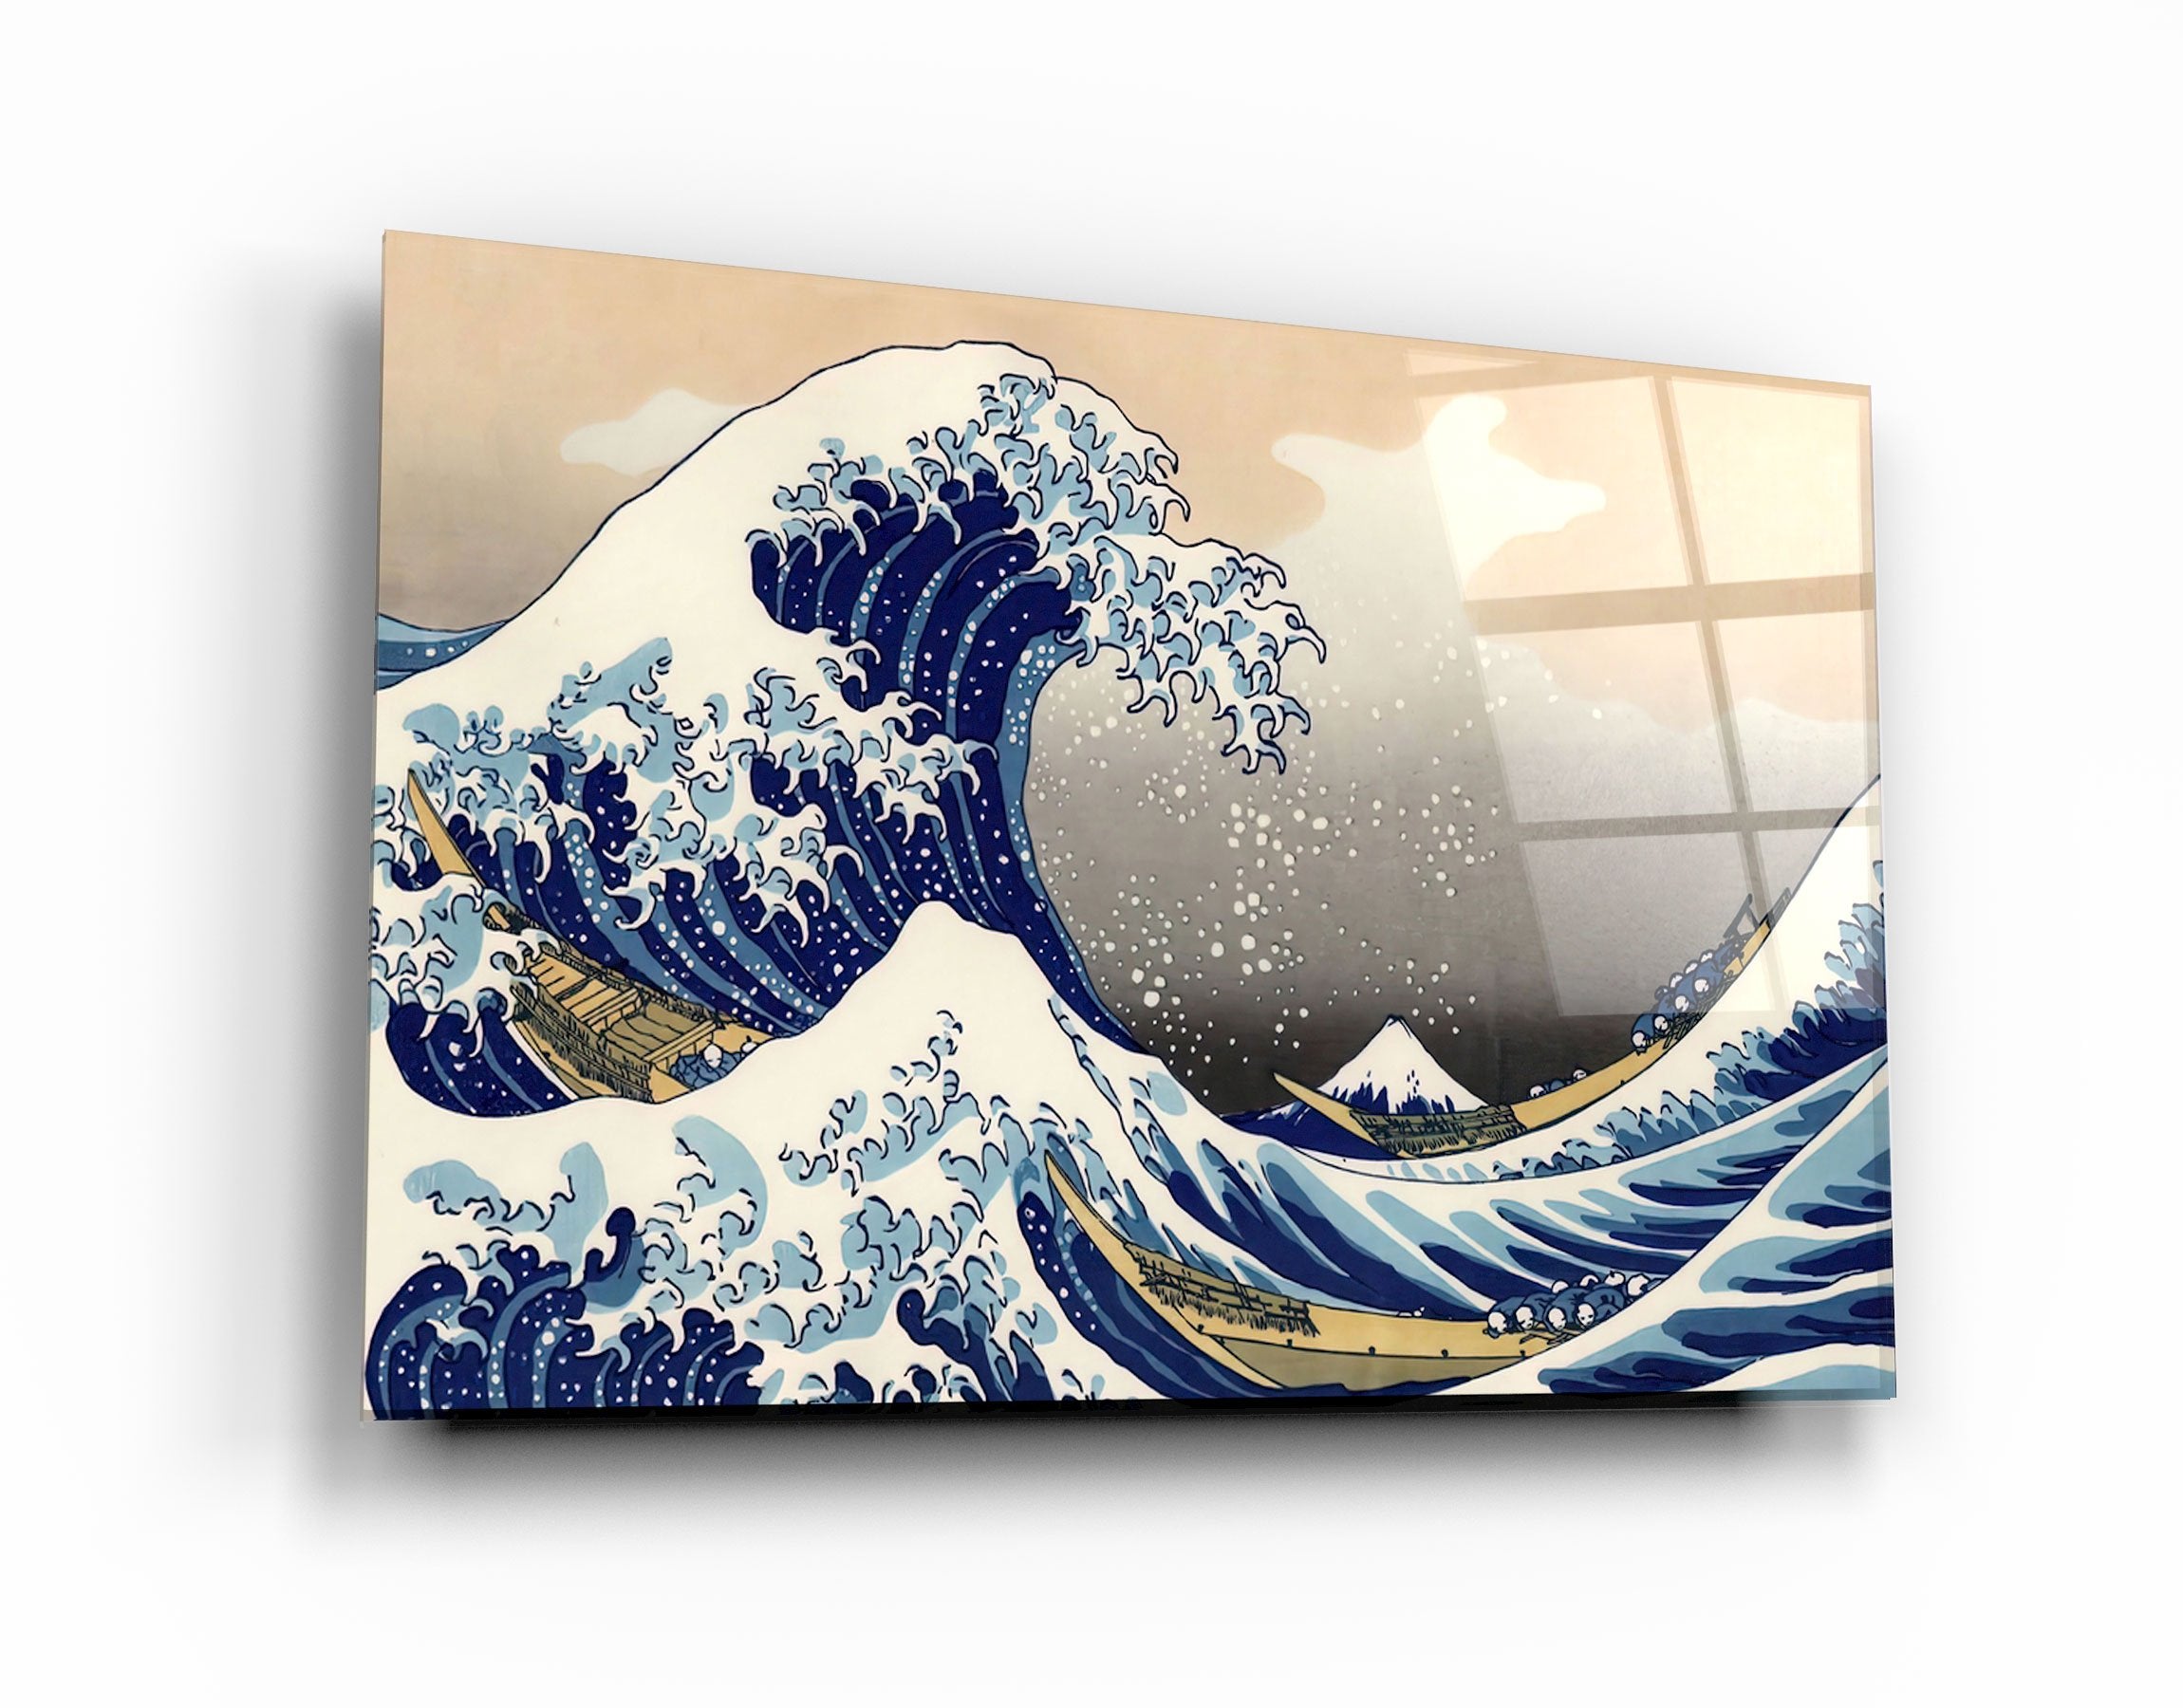 ・"The Great Wave off Kanagawa (1829) by Hokusai"・Glass Wall Art